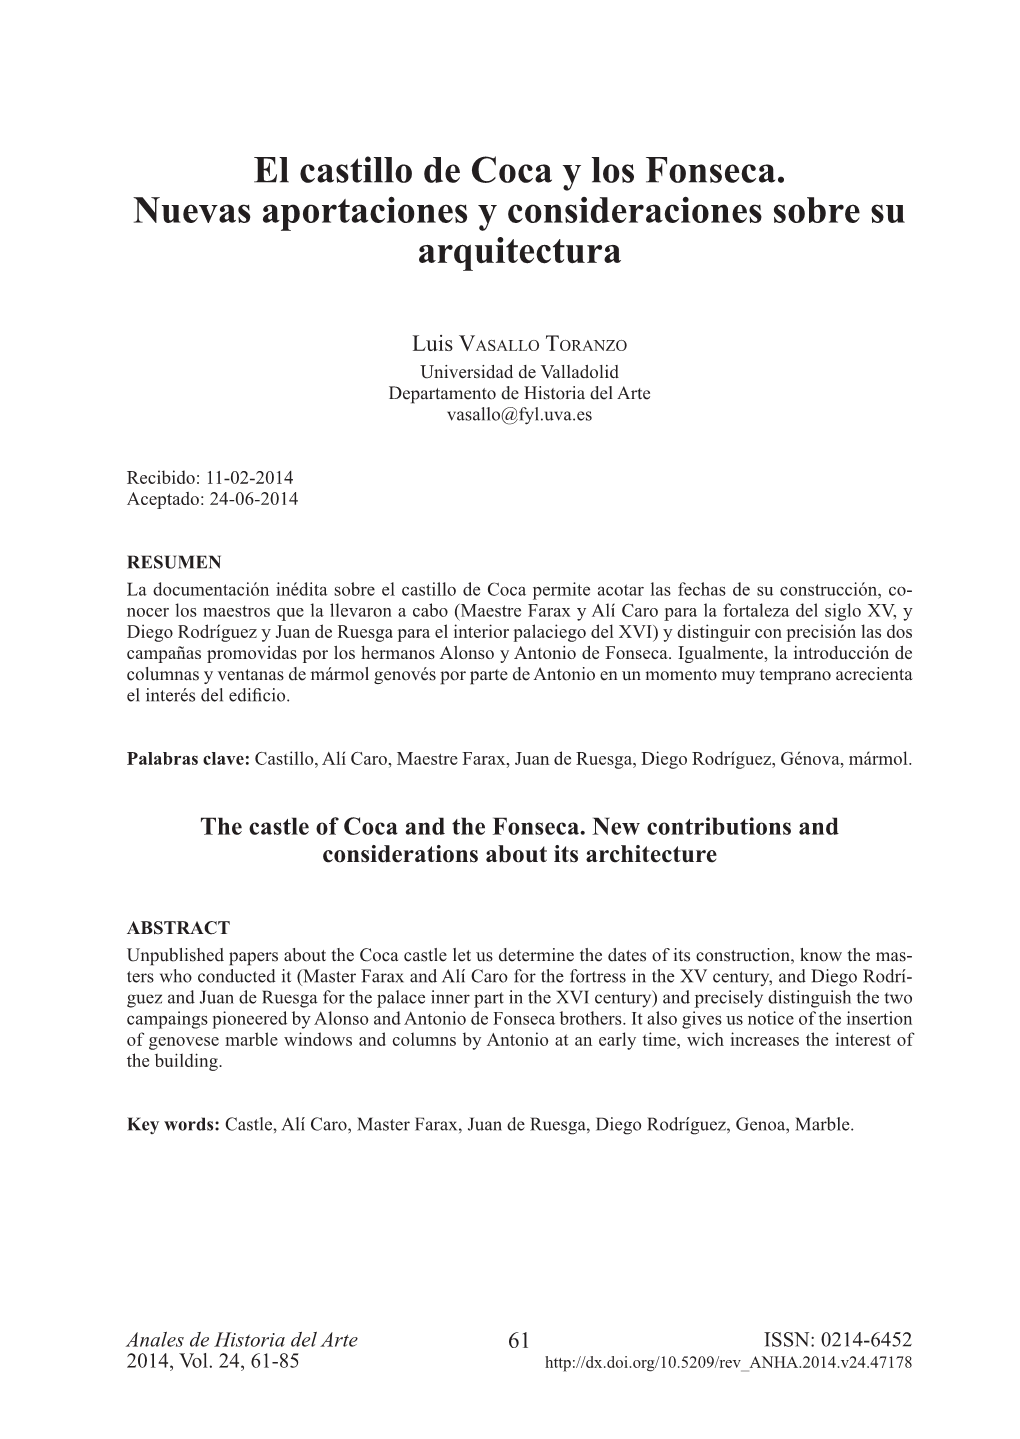 El Castillo De Coca Y Los Fonseca. Nuevas Aportaciones Y Consideraciones Sobre Su Arquitectura